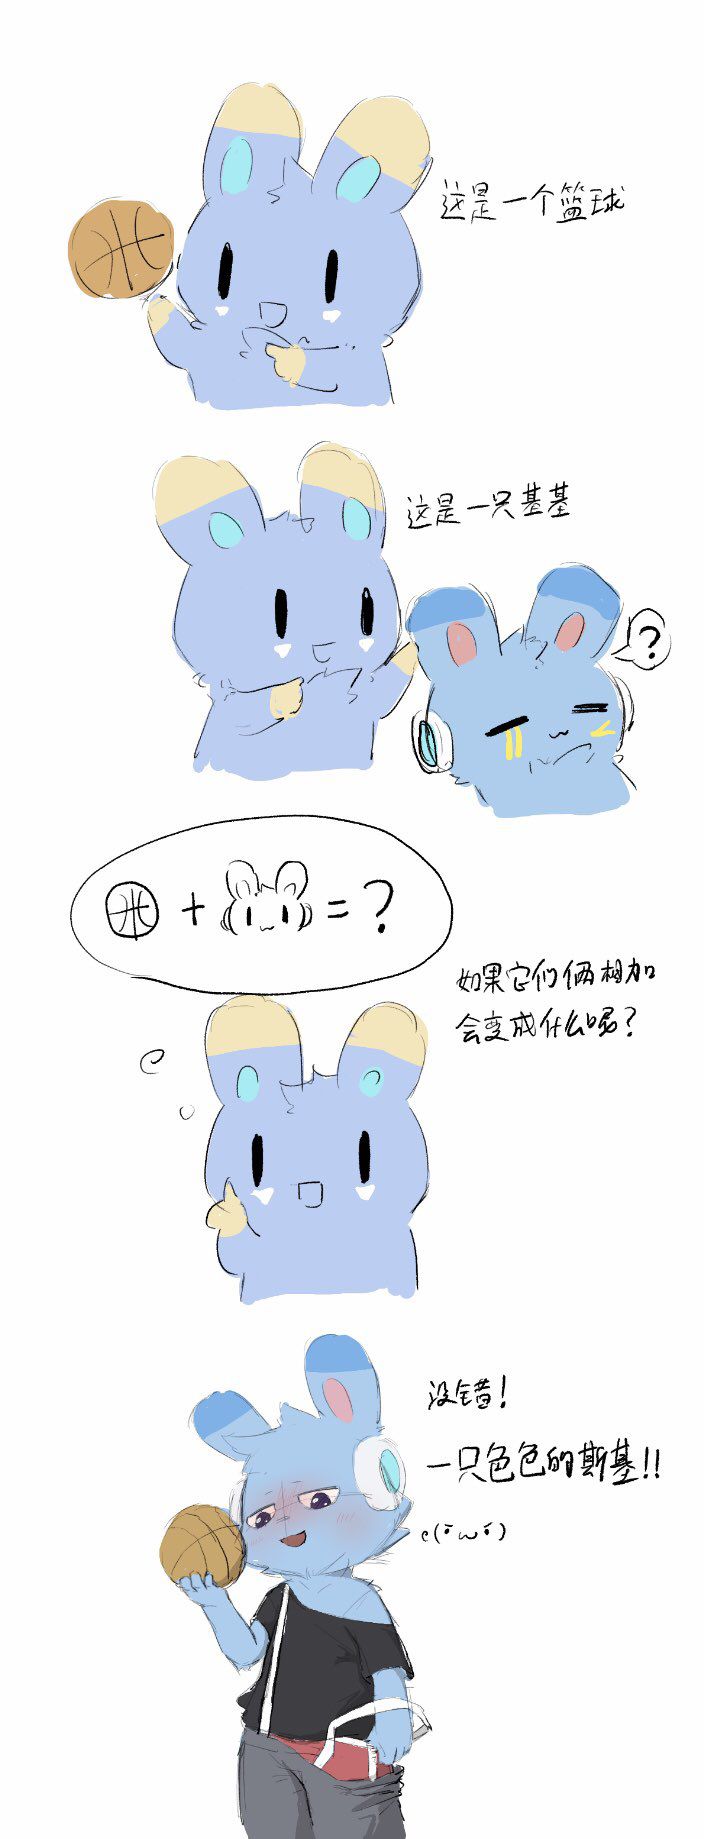 [twitter] kaicuirabbit (56480341) 157